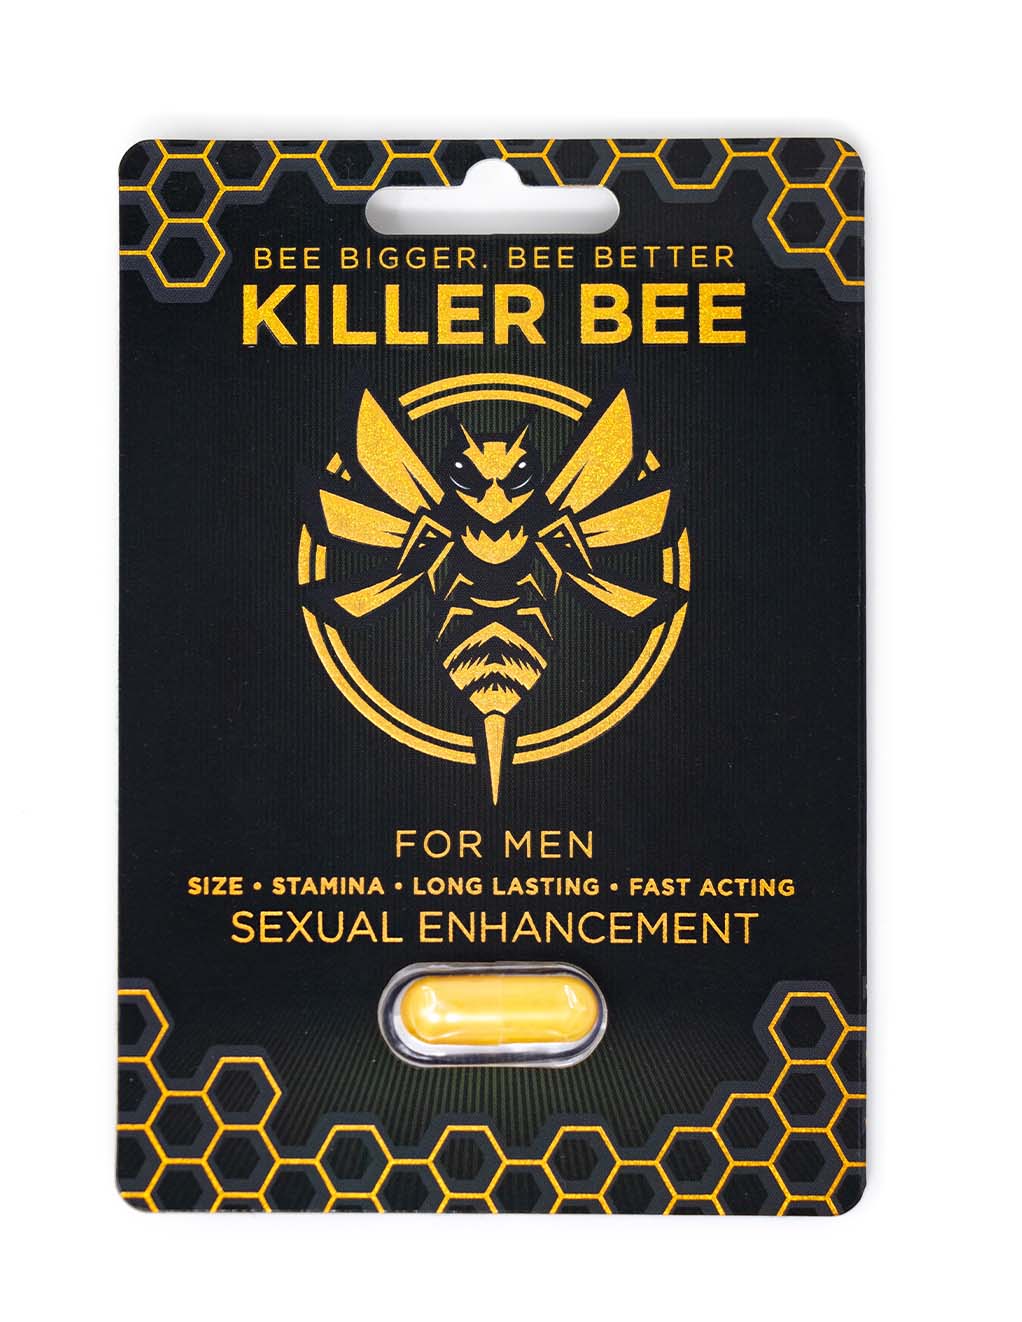 Killer Bee Men's Supplement- Main